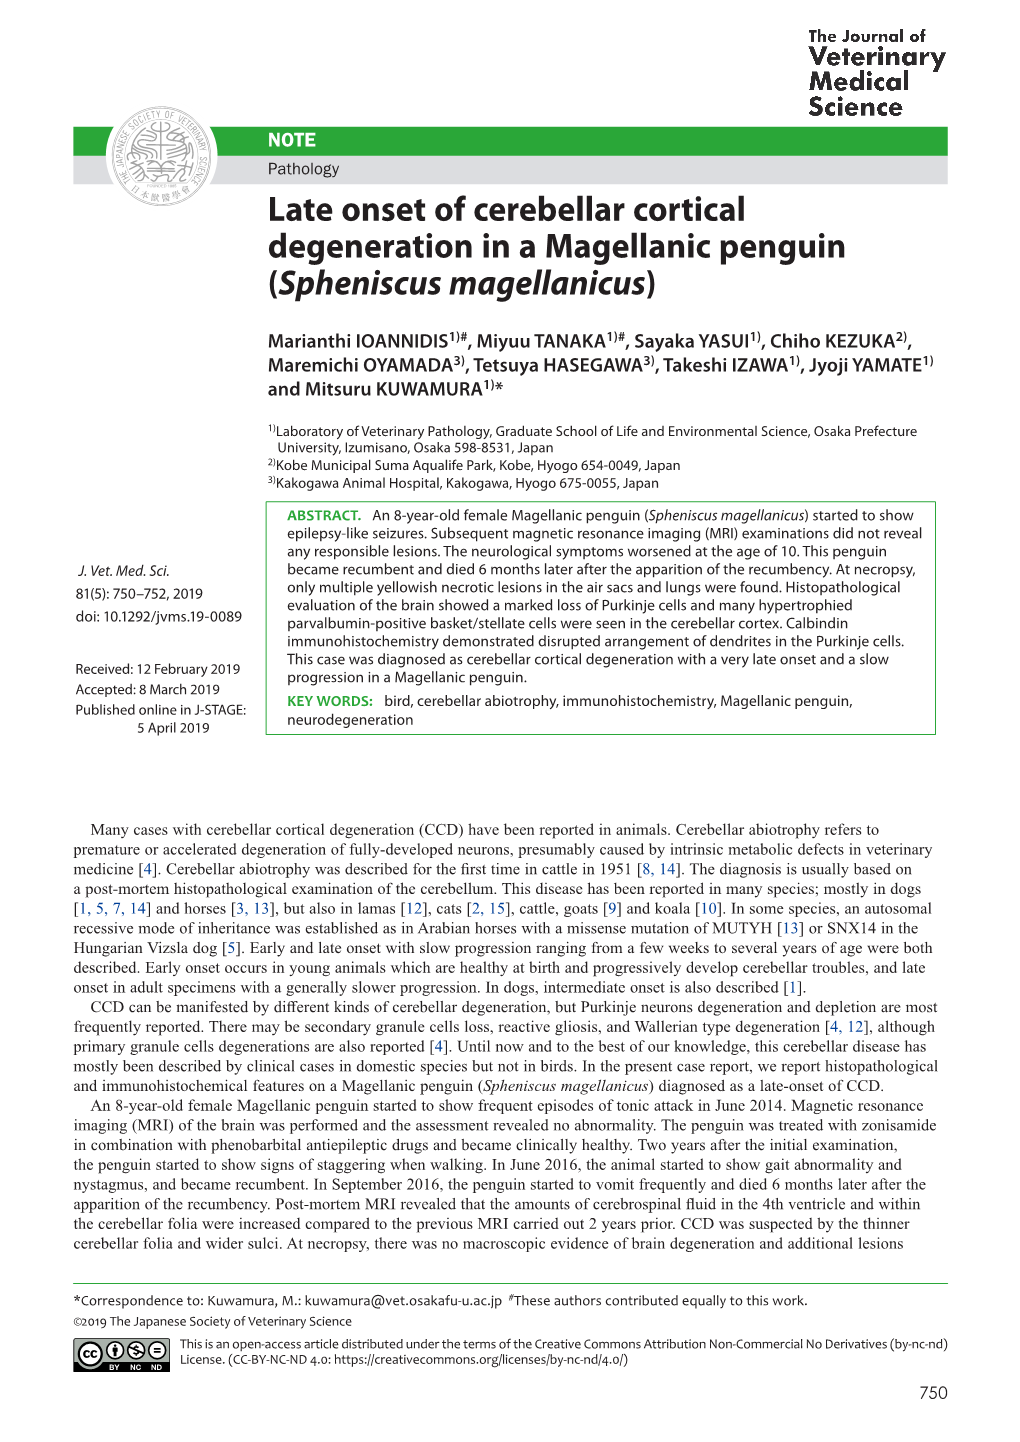 Late Onset of Cerebellar Cortical Degeneration in a Magellanic Penguin (Spheniscus Magellanicus)